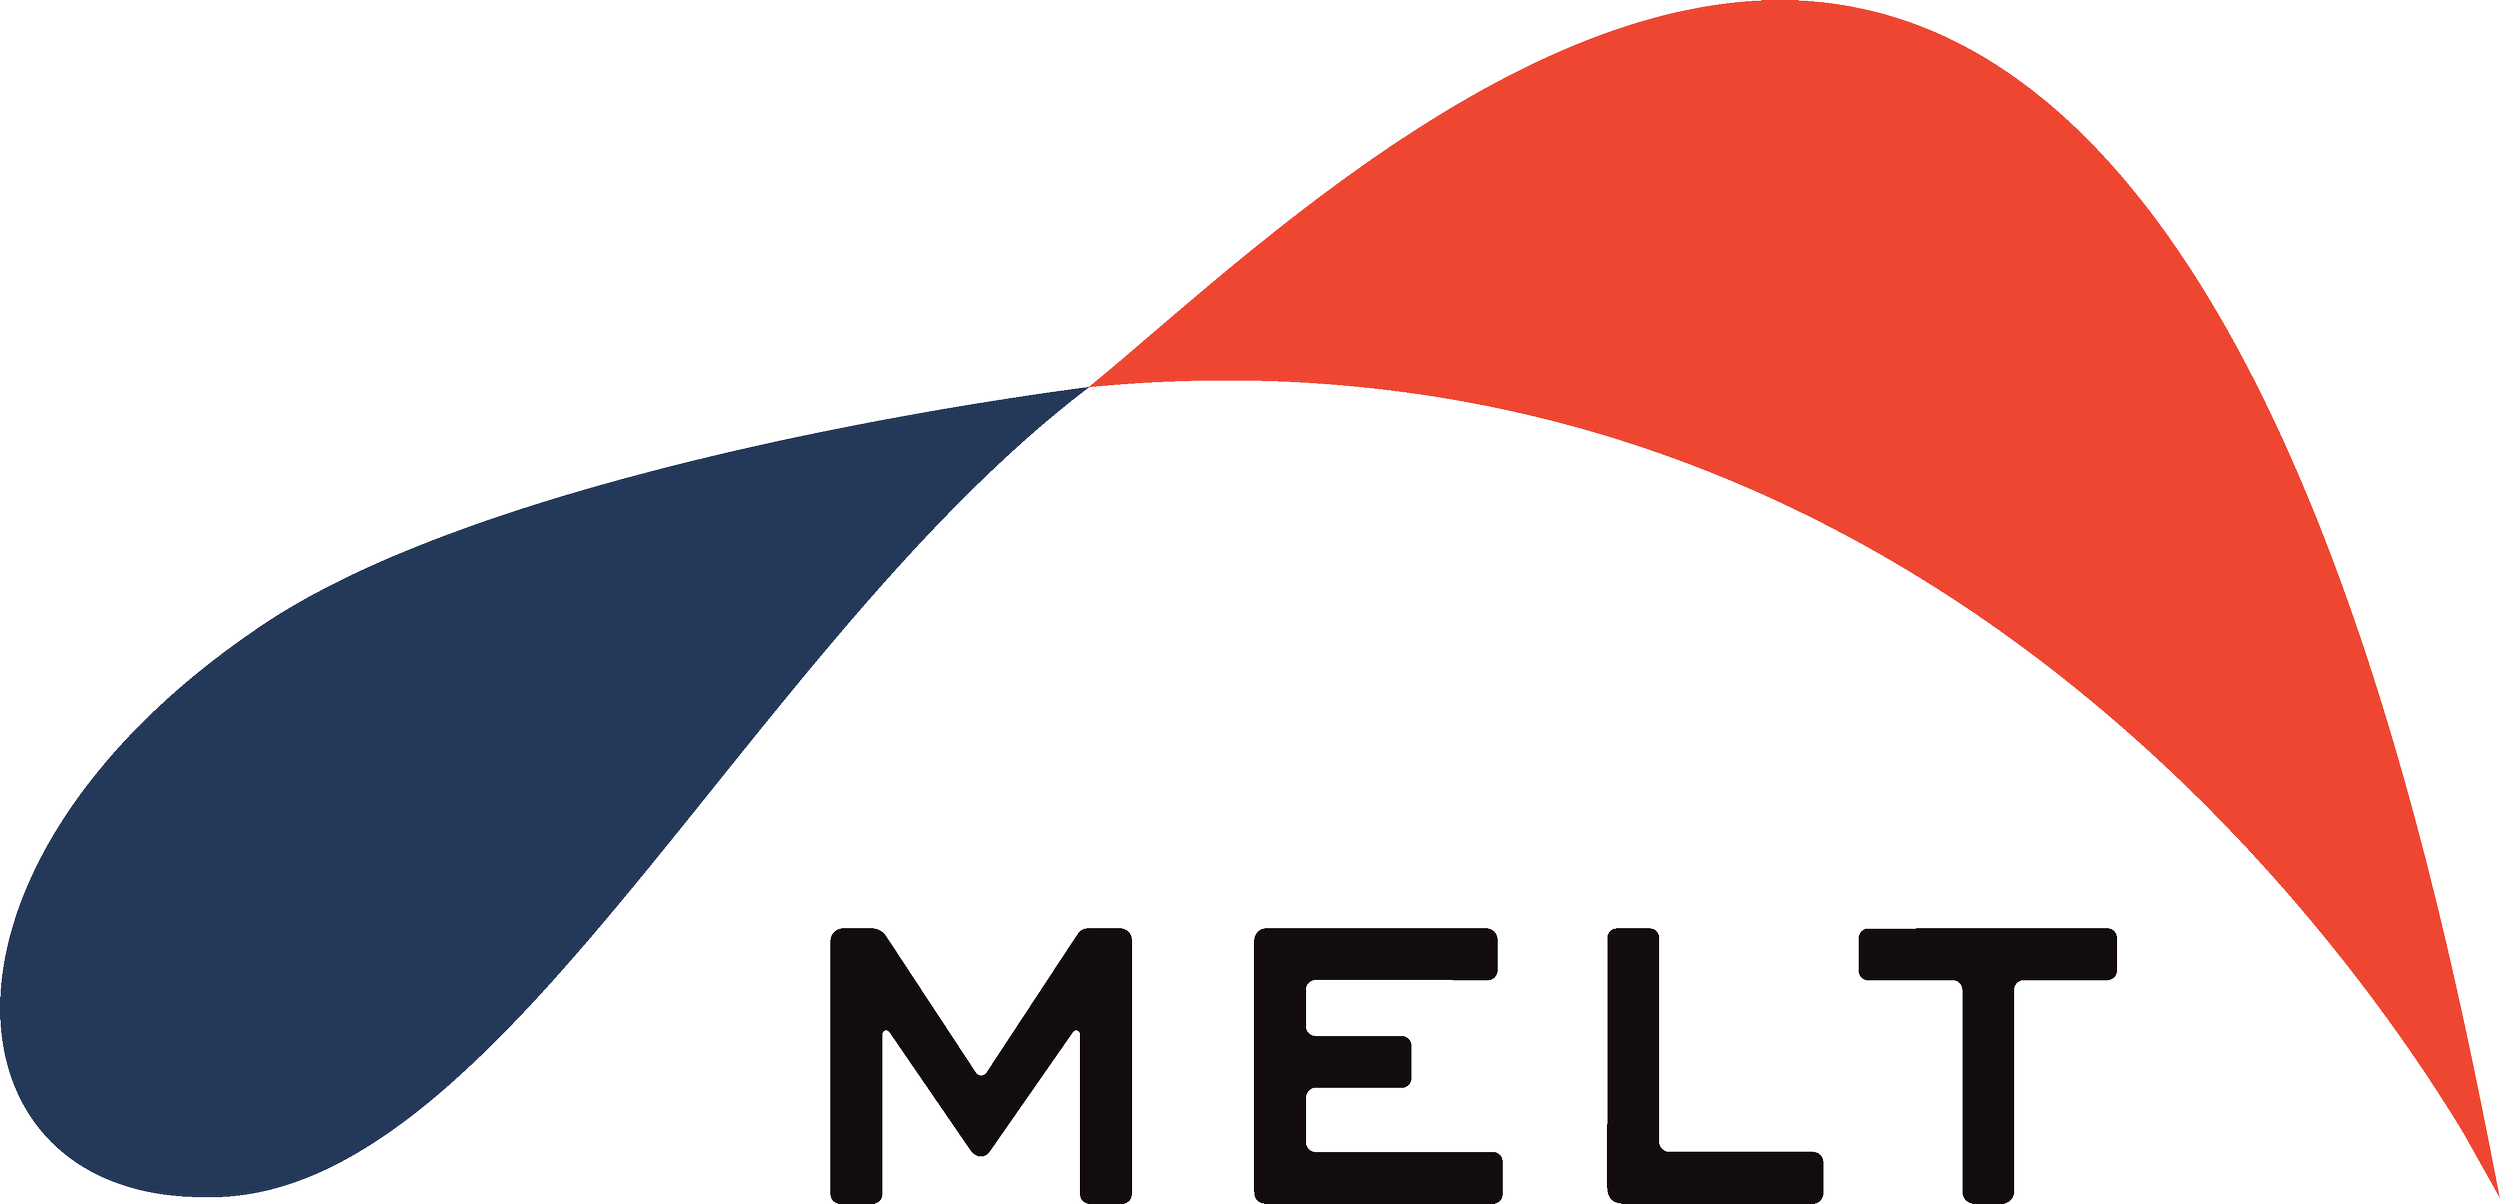 Melt logo (Copy) (Copy)